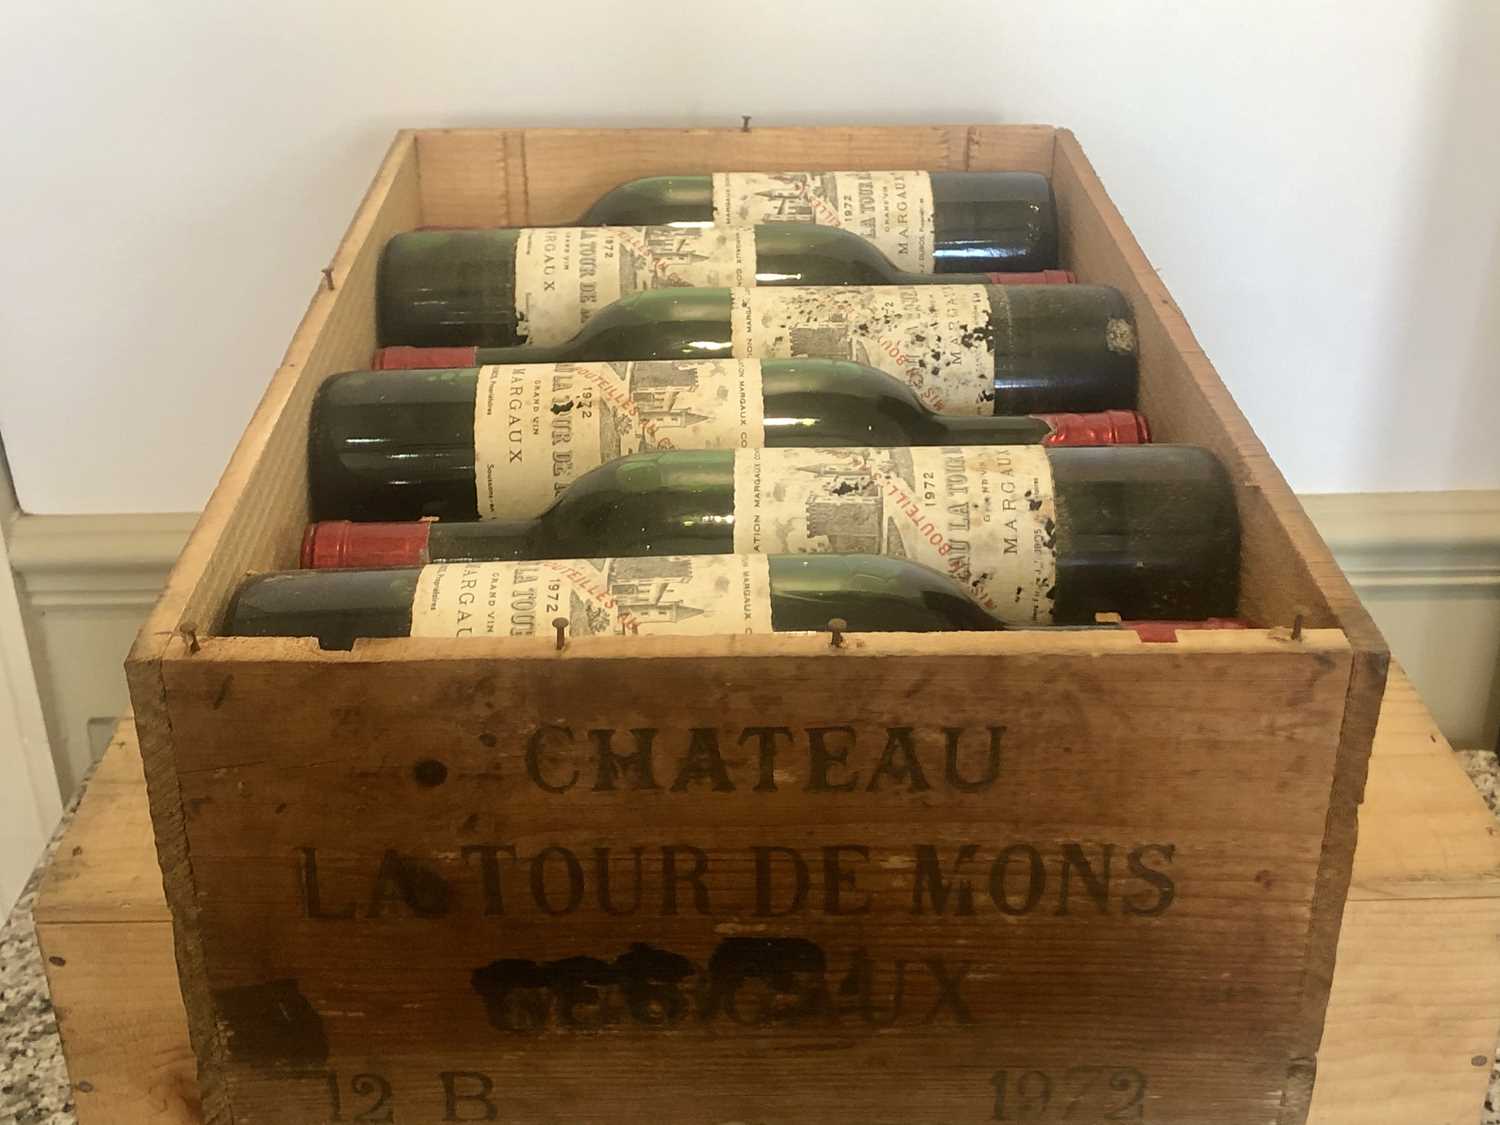 Lot 32 - 12 Bottles Chateau La Tour de Mons Cru Bourgeois Margaux 1972